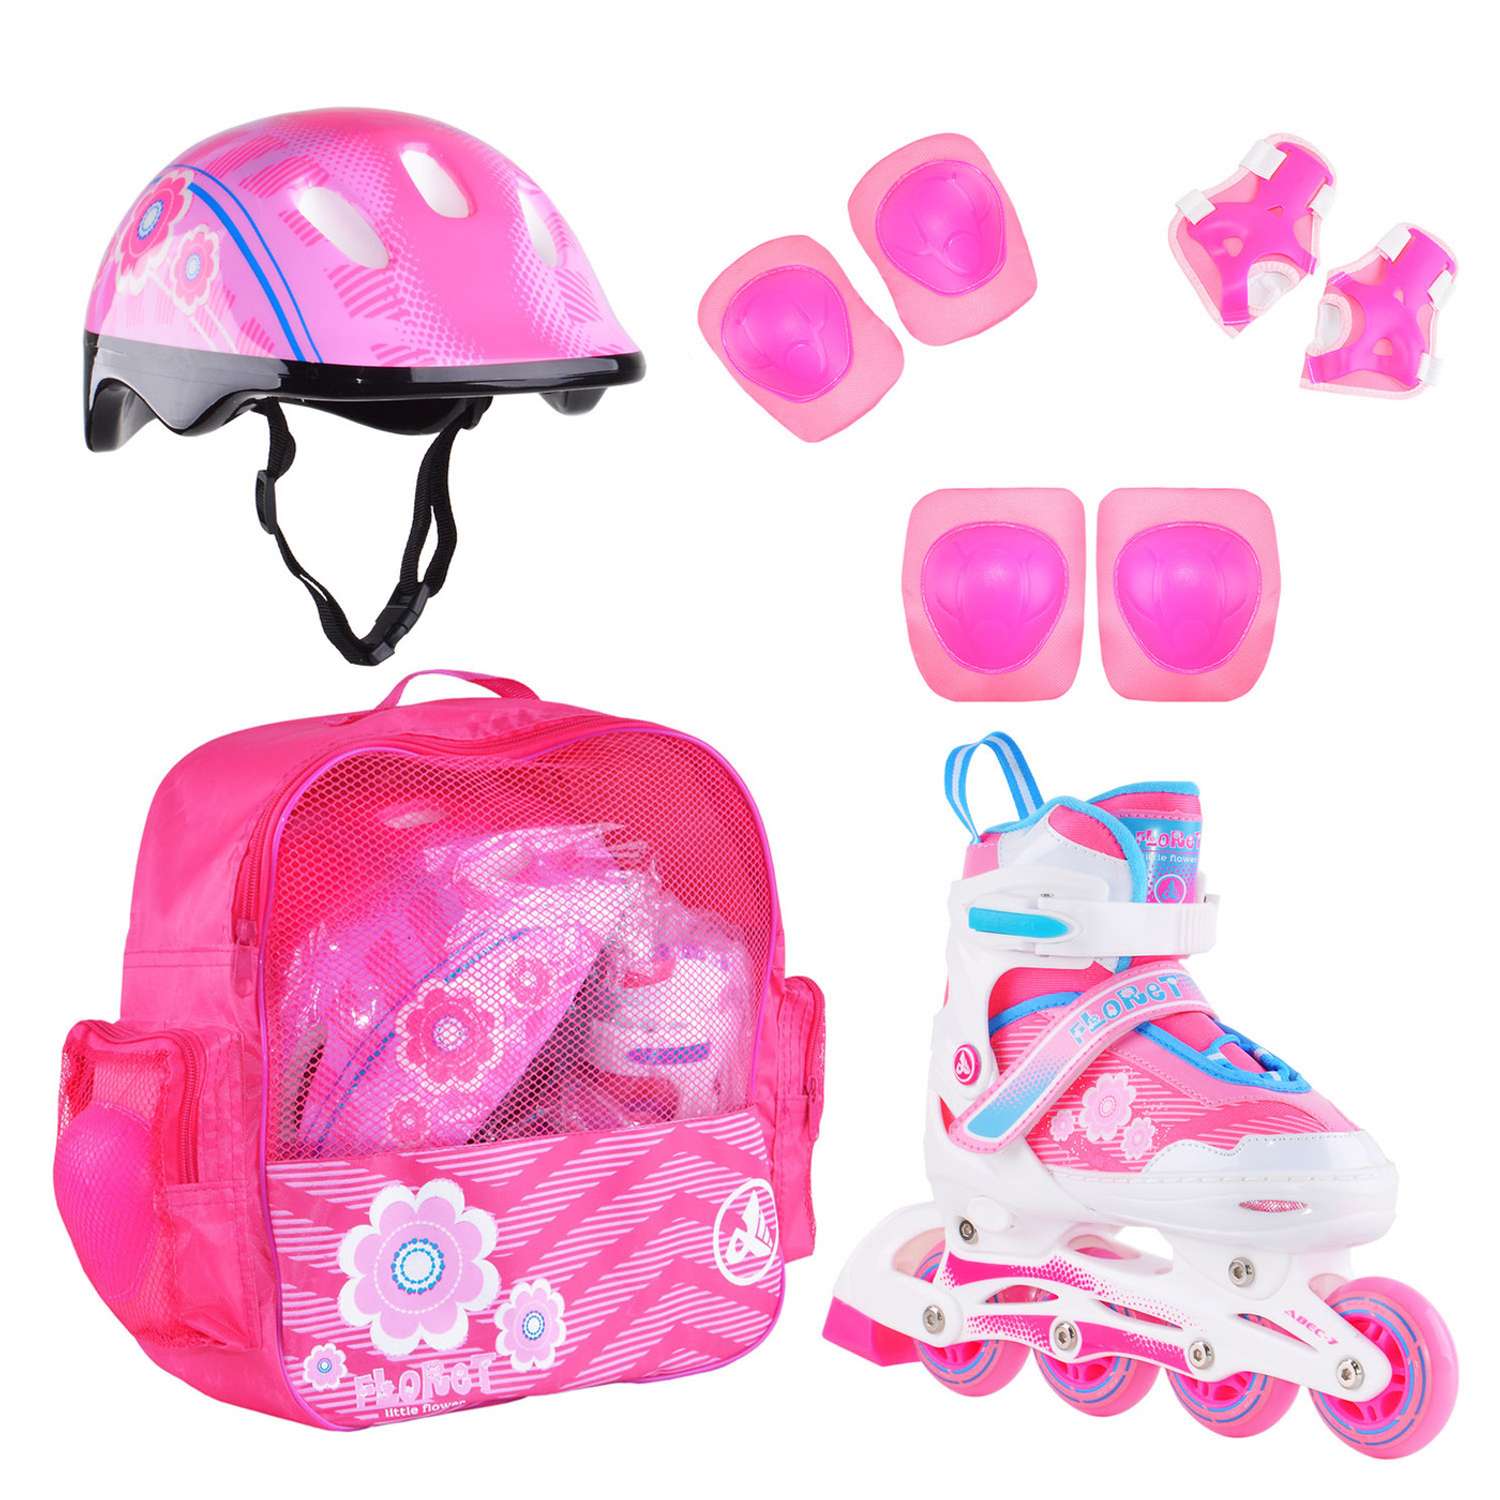 Набор роликовые коньки Alpha Caprice раздвижные Floret White Pink Blue шлем и набор защиты в сумке размер S 31-34 - фото 1